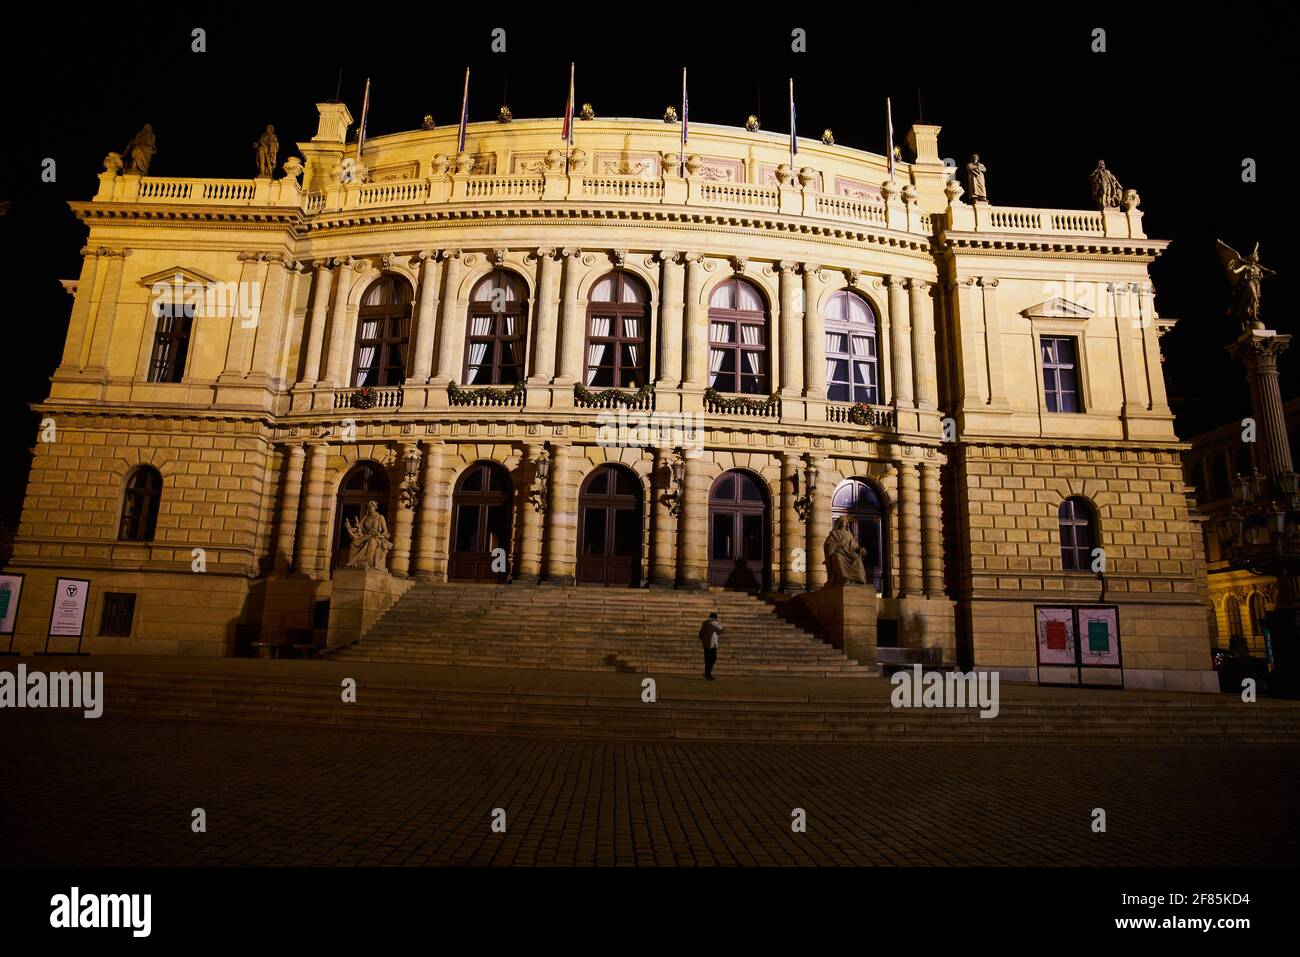 PRAGUE, RÉPUBLIQUE TCHÈQUE - 01 janv. 2021: Prague, République Tchèque - 1er janvier 2021: Vue de nuit de la salle de concert Rudolfinum à Prague Banque D'Images